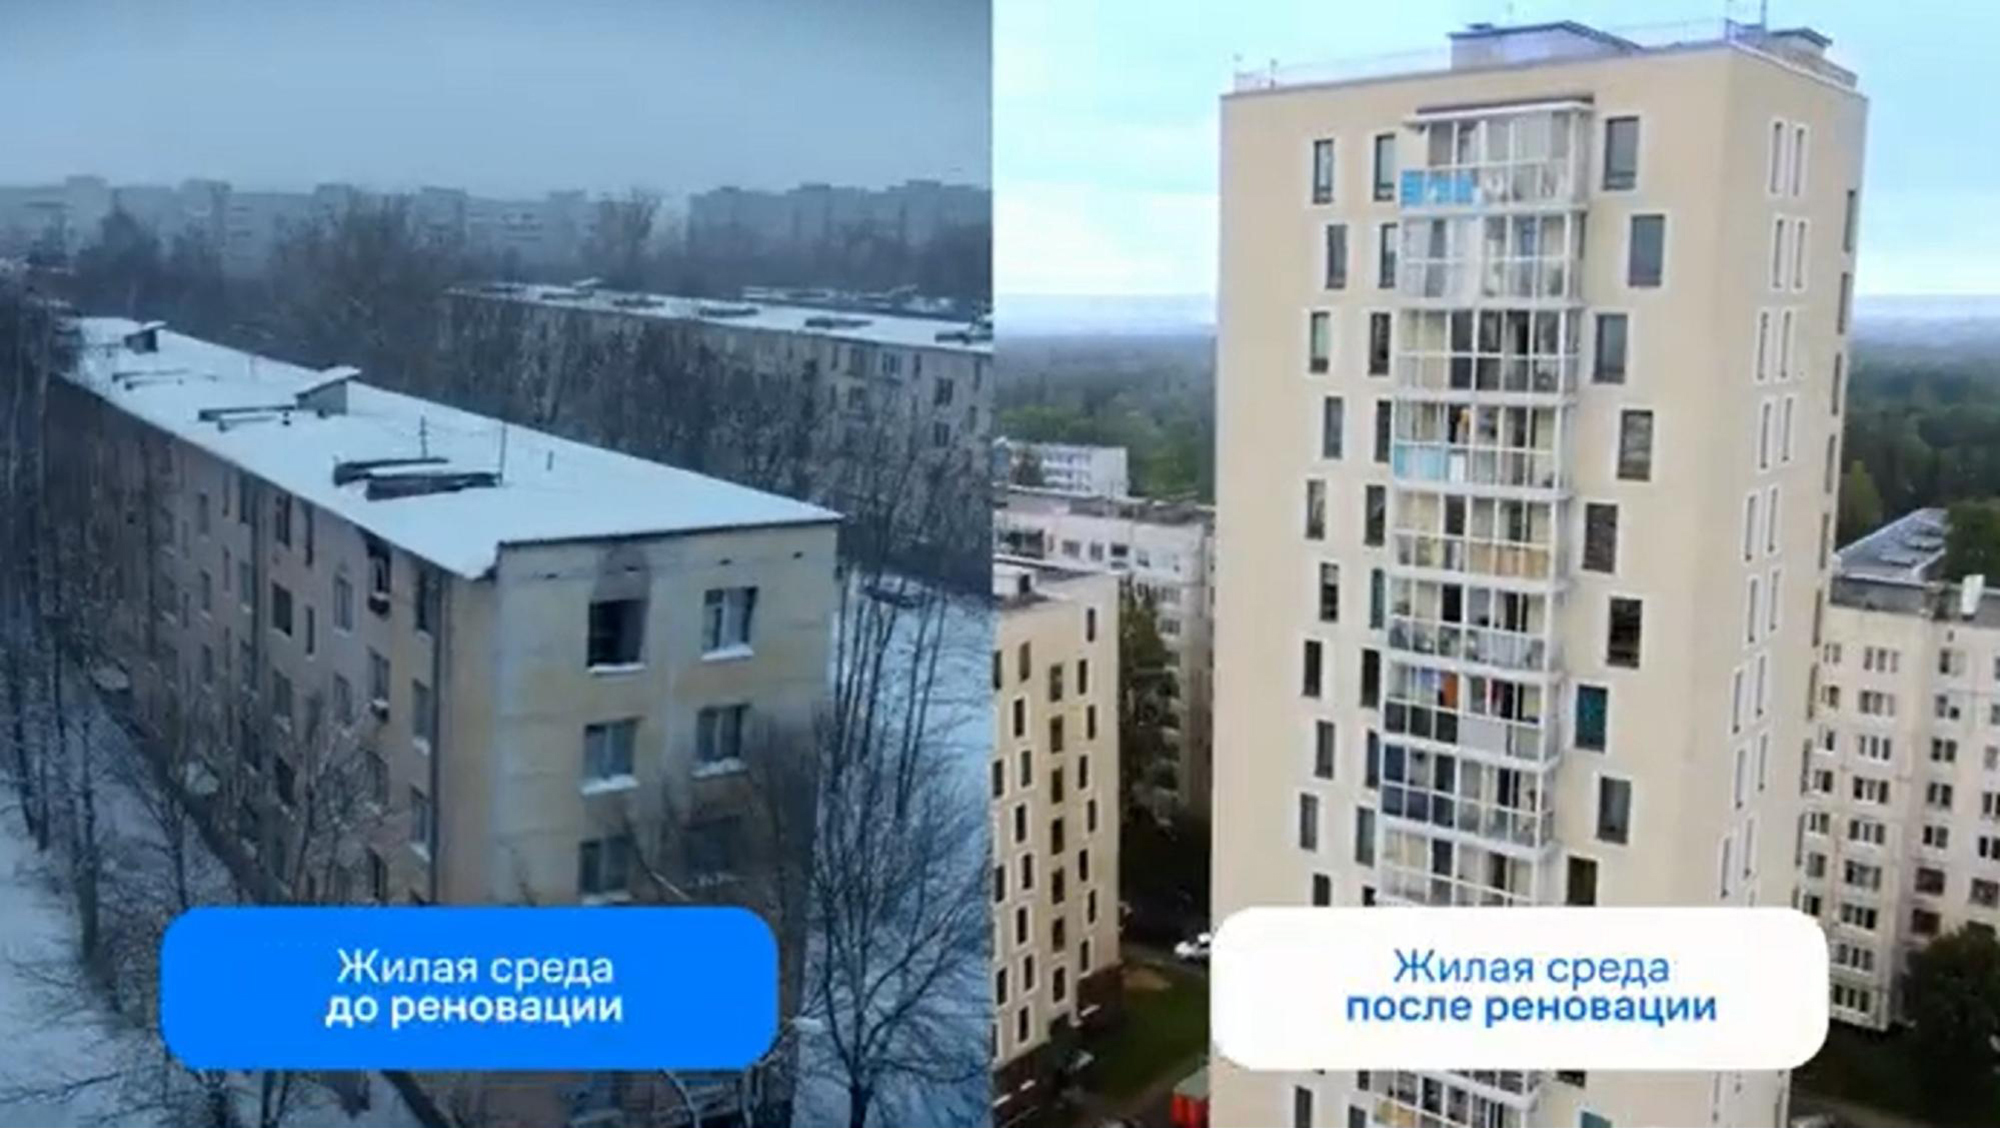 Так выглядят кварталы 7⁠—⁠17 до и после реновации. Источник: rzt.spb.ru